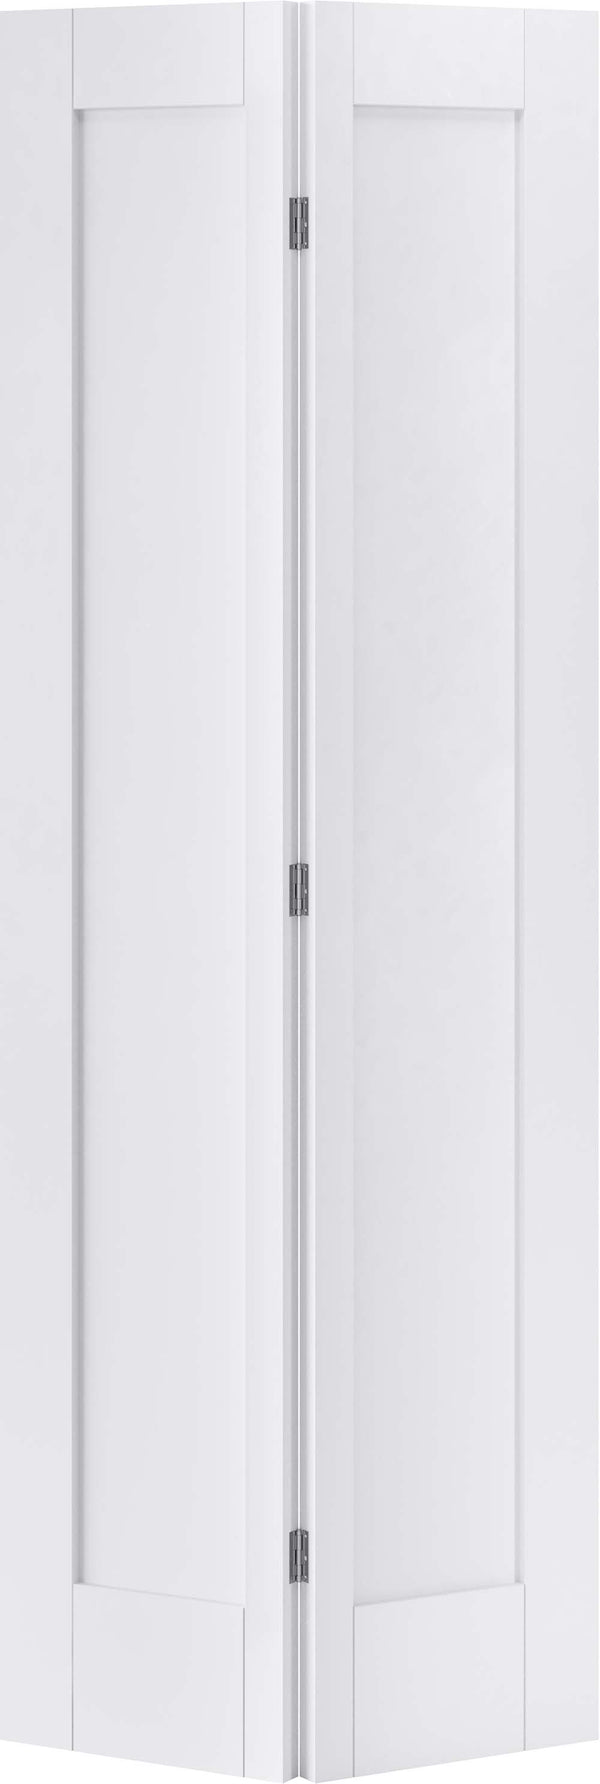 White Primed Pattern 10 Primed Internal Door